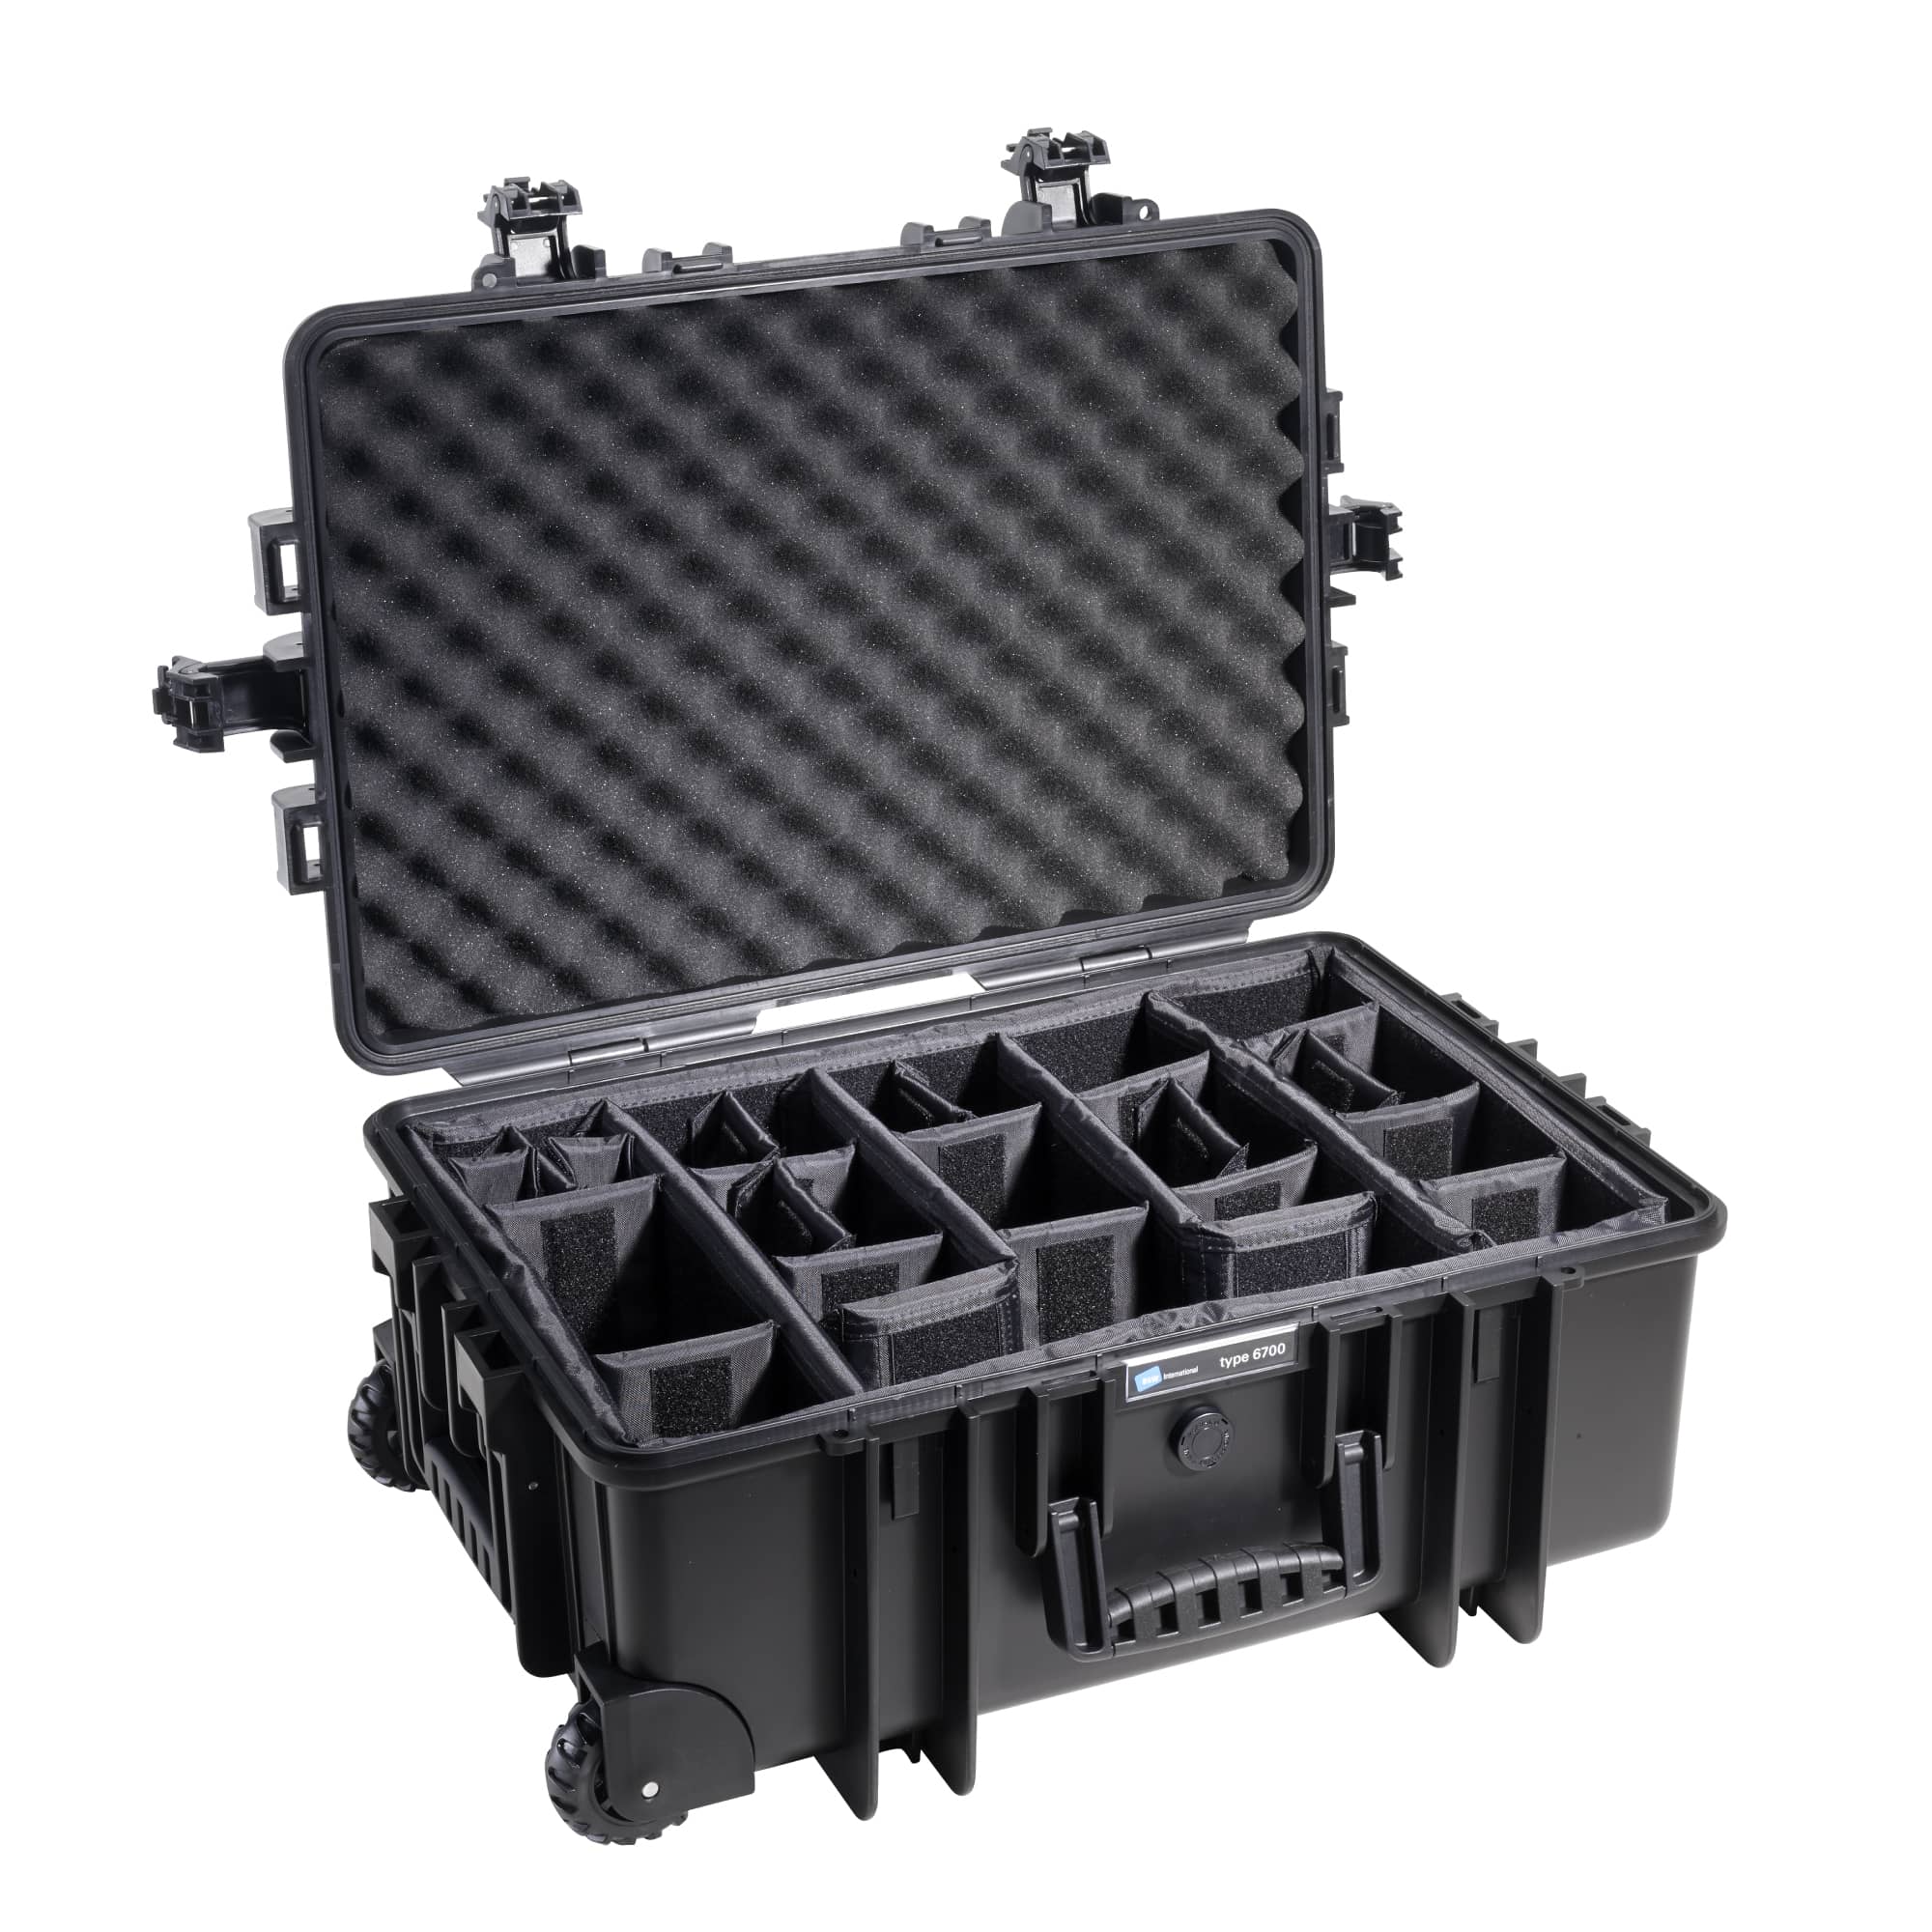 B&W Outdoor Case Typ 6700 schwarz mit variabler Facheinteilung (RPD) Farbe: schwarz / Innenausstattung: Facheinteilung (RPD)